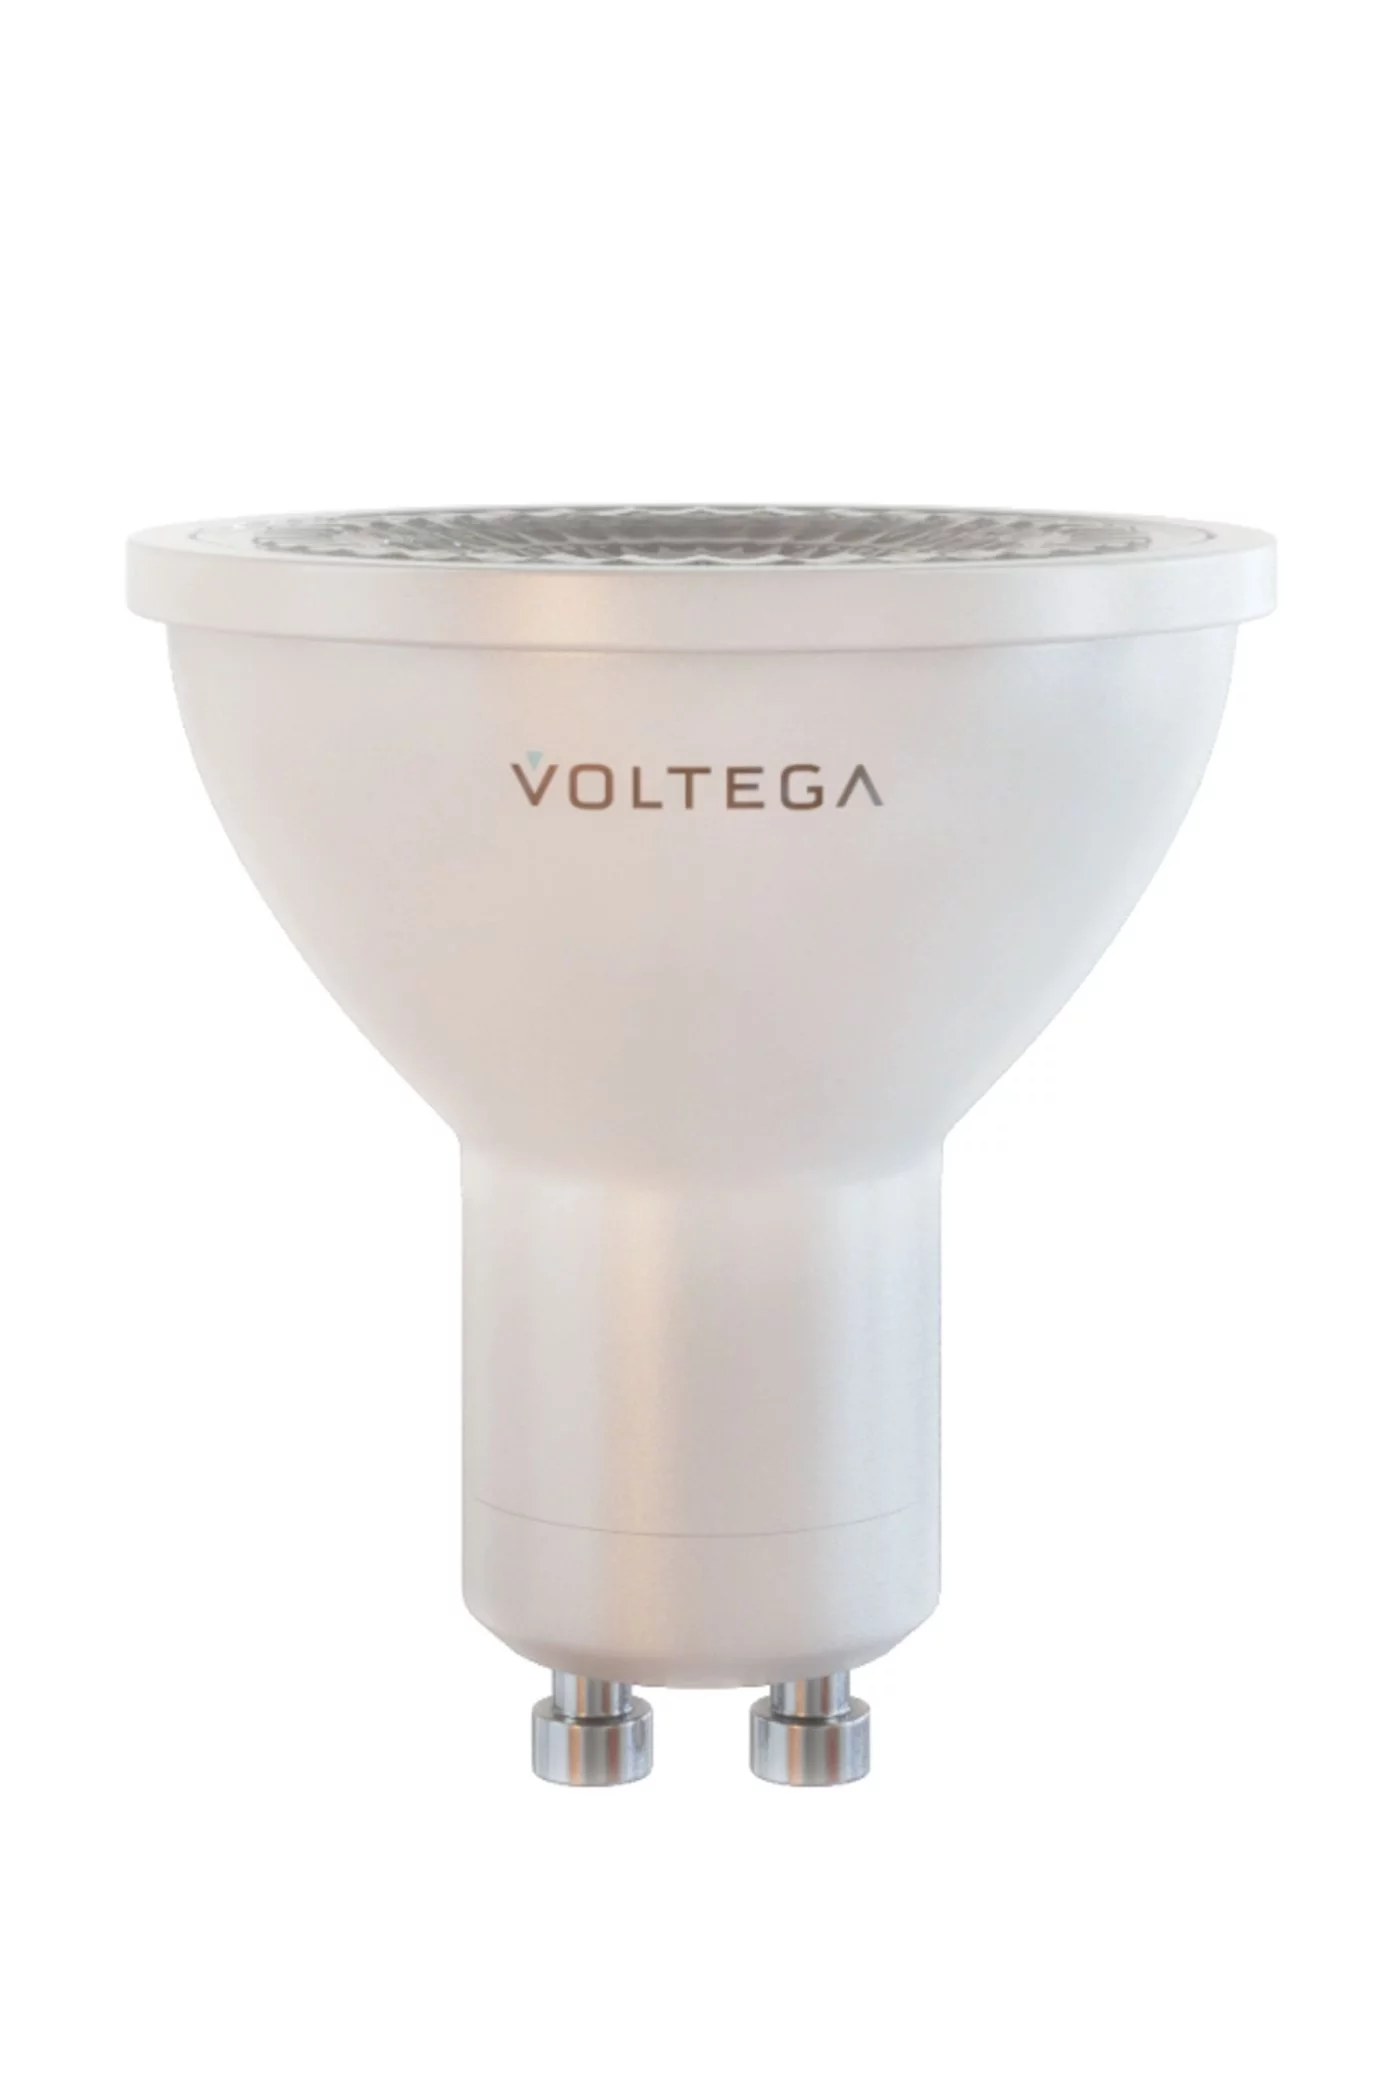   
                        
                        Лампа VOLTEGA  17079    
                        .  
                                                                                                Материал: Пластик.                          фото 1